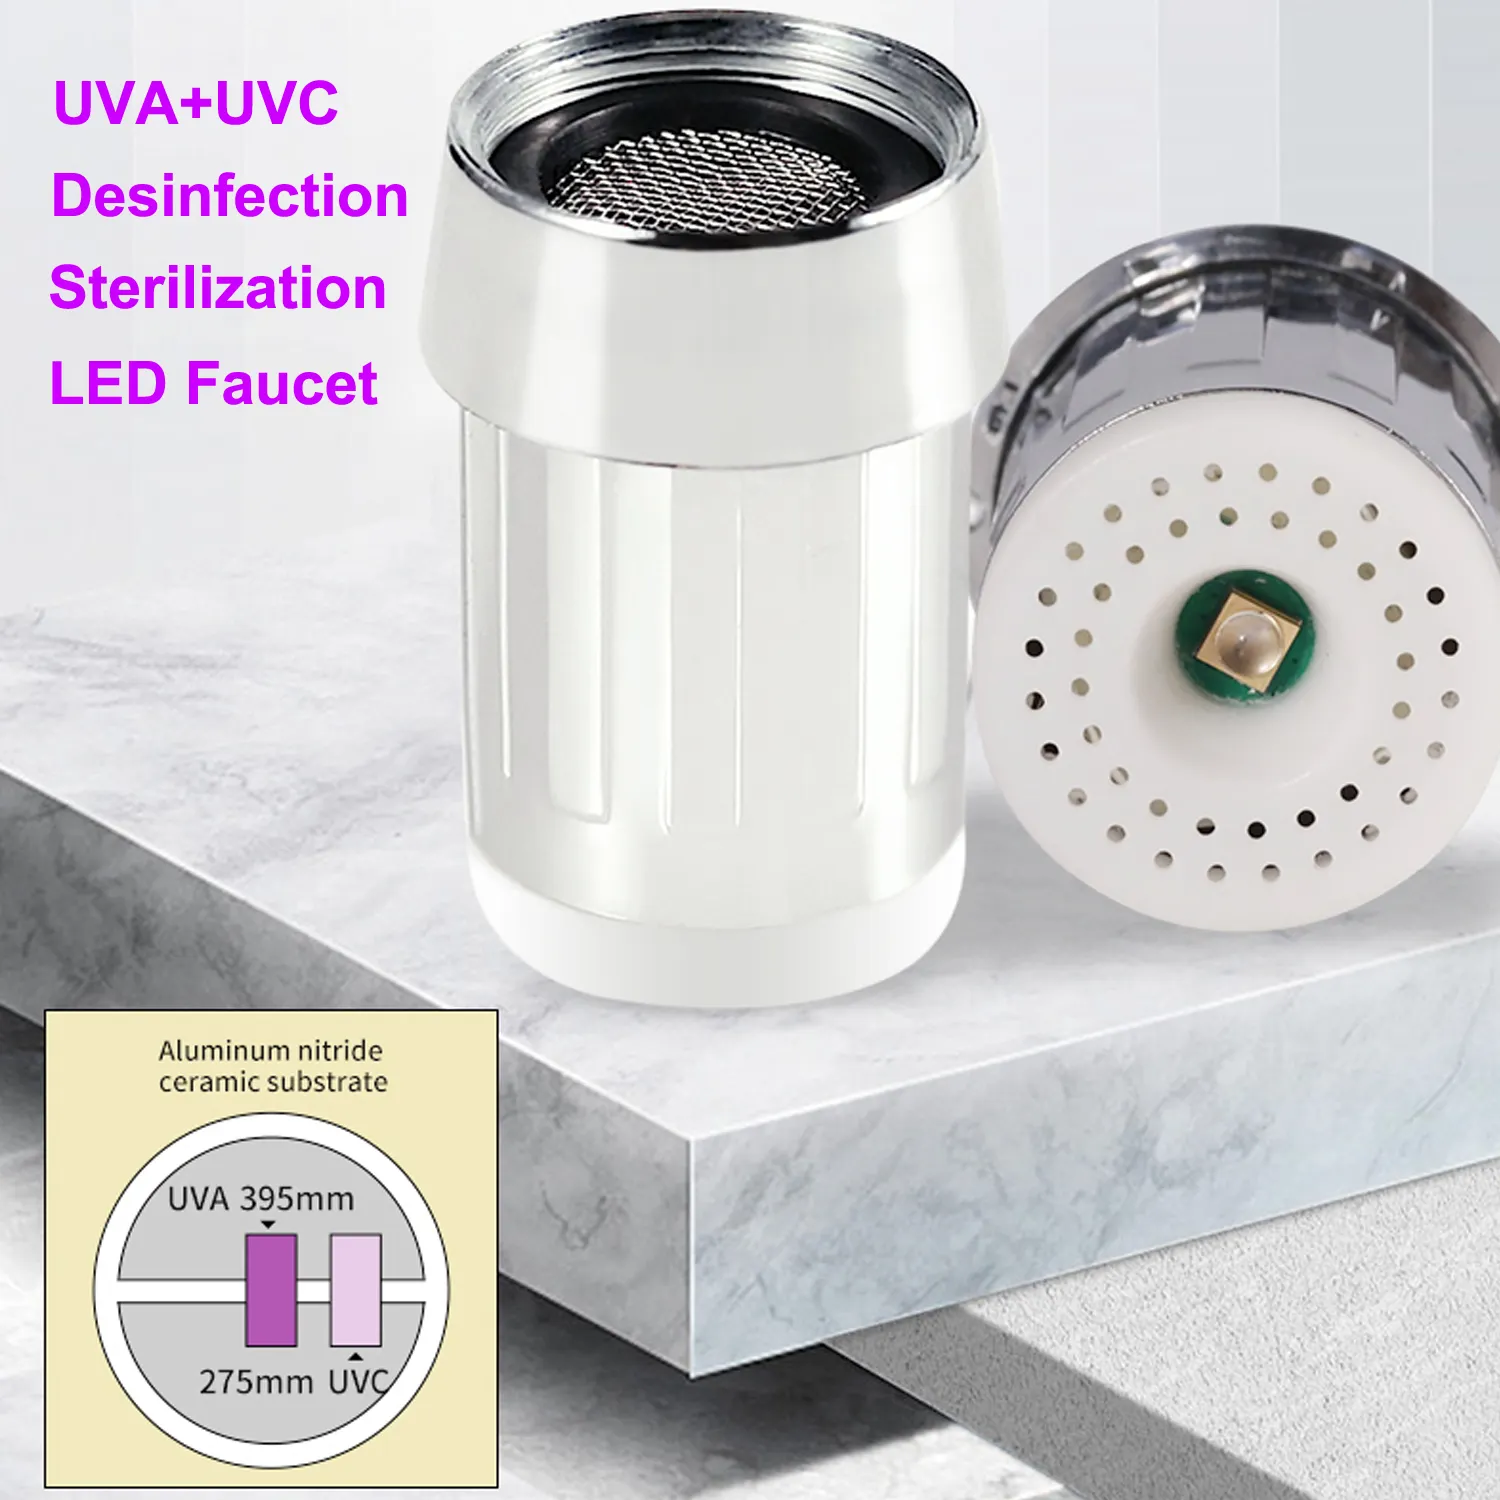 Arastar UVA UVC Keran Disinfeksi, Keran Dapur Universal Sterilisasi dengan Semprotan Tarik Ke Bawah, Aksesori Keran Kamar Mandi